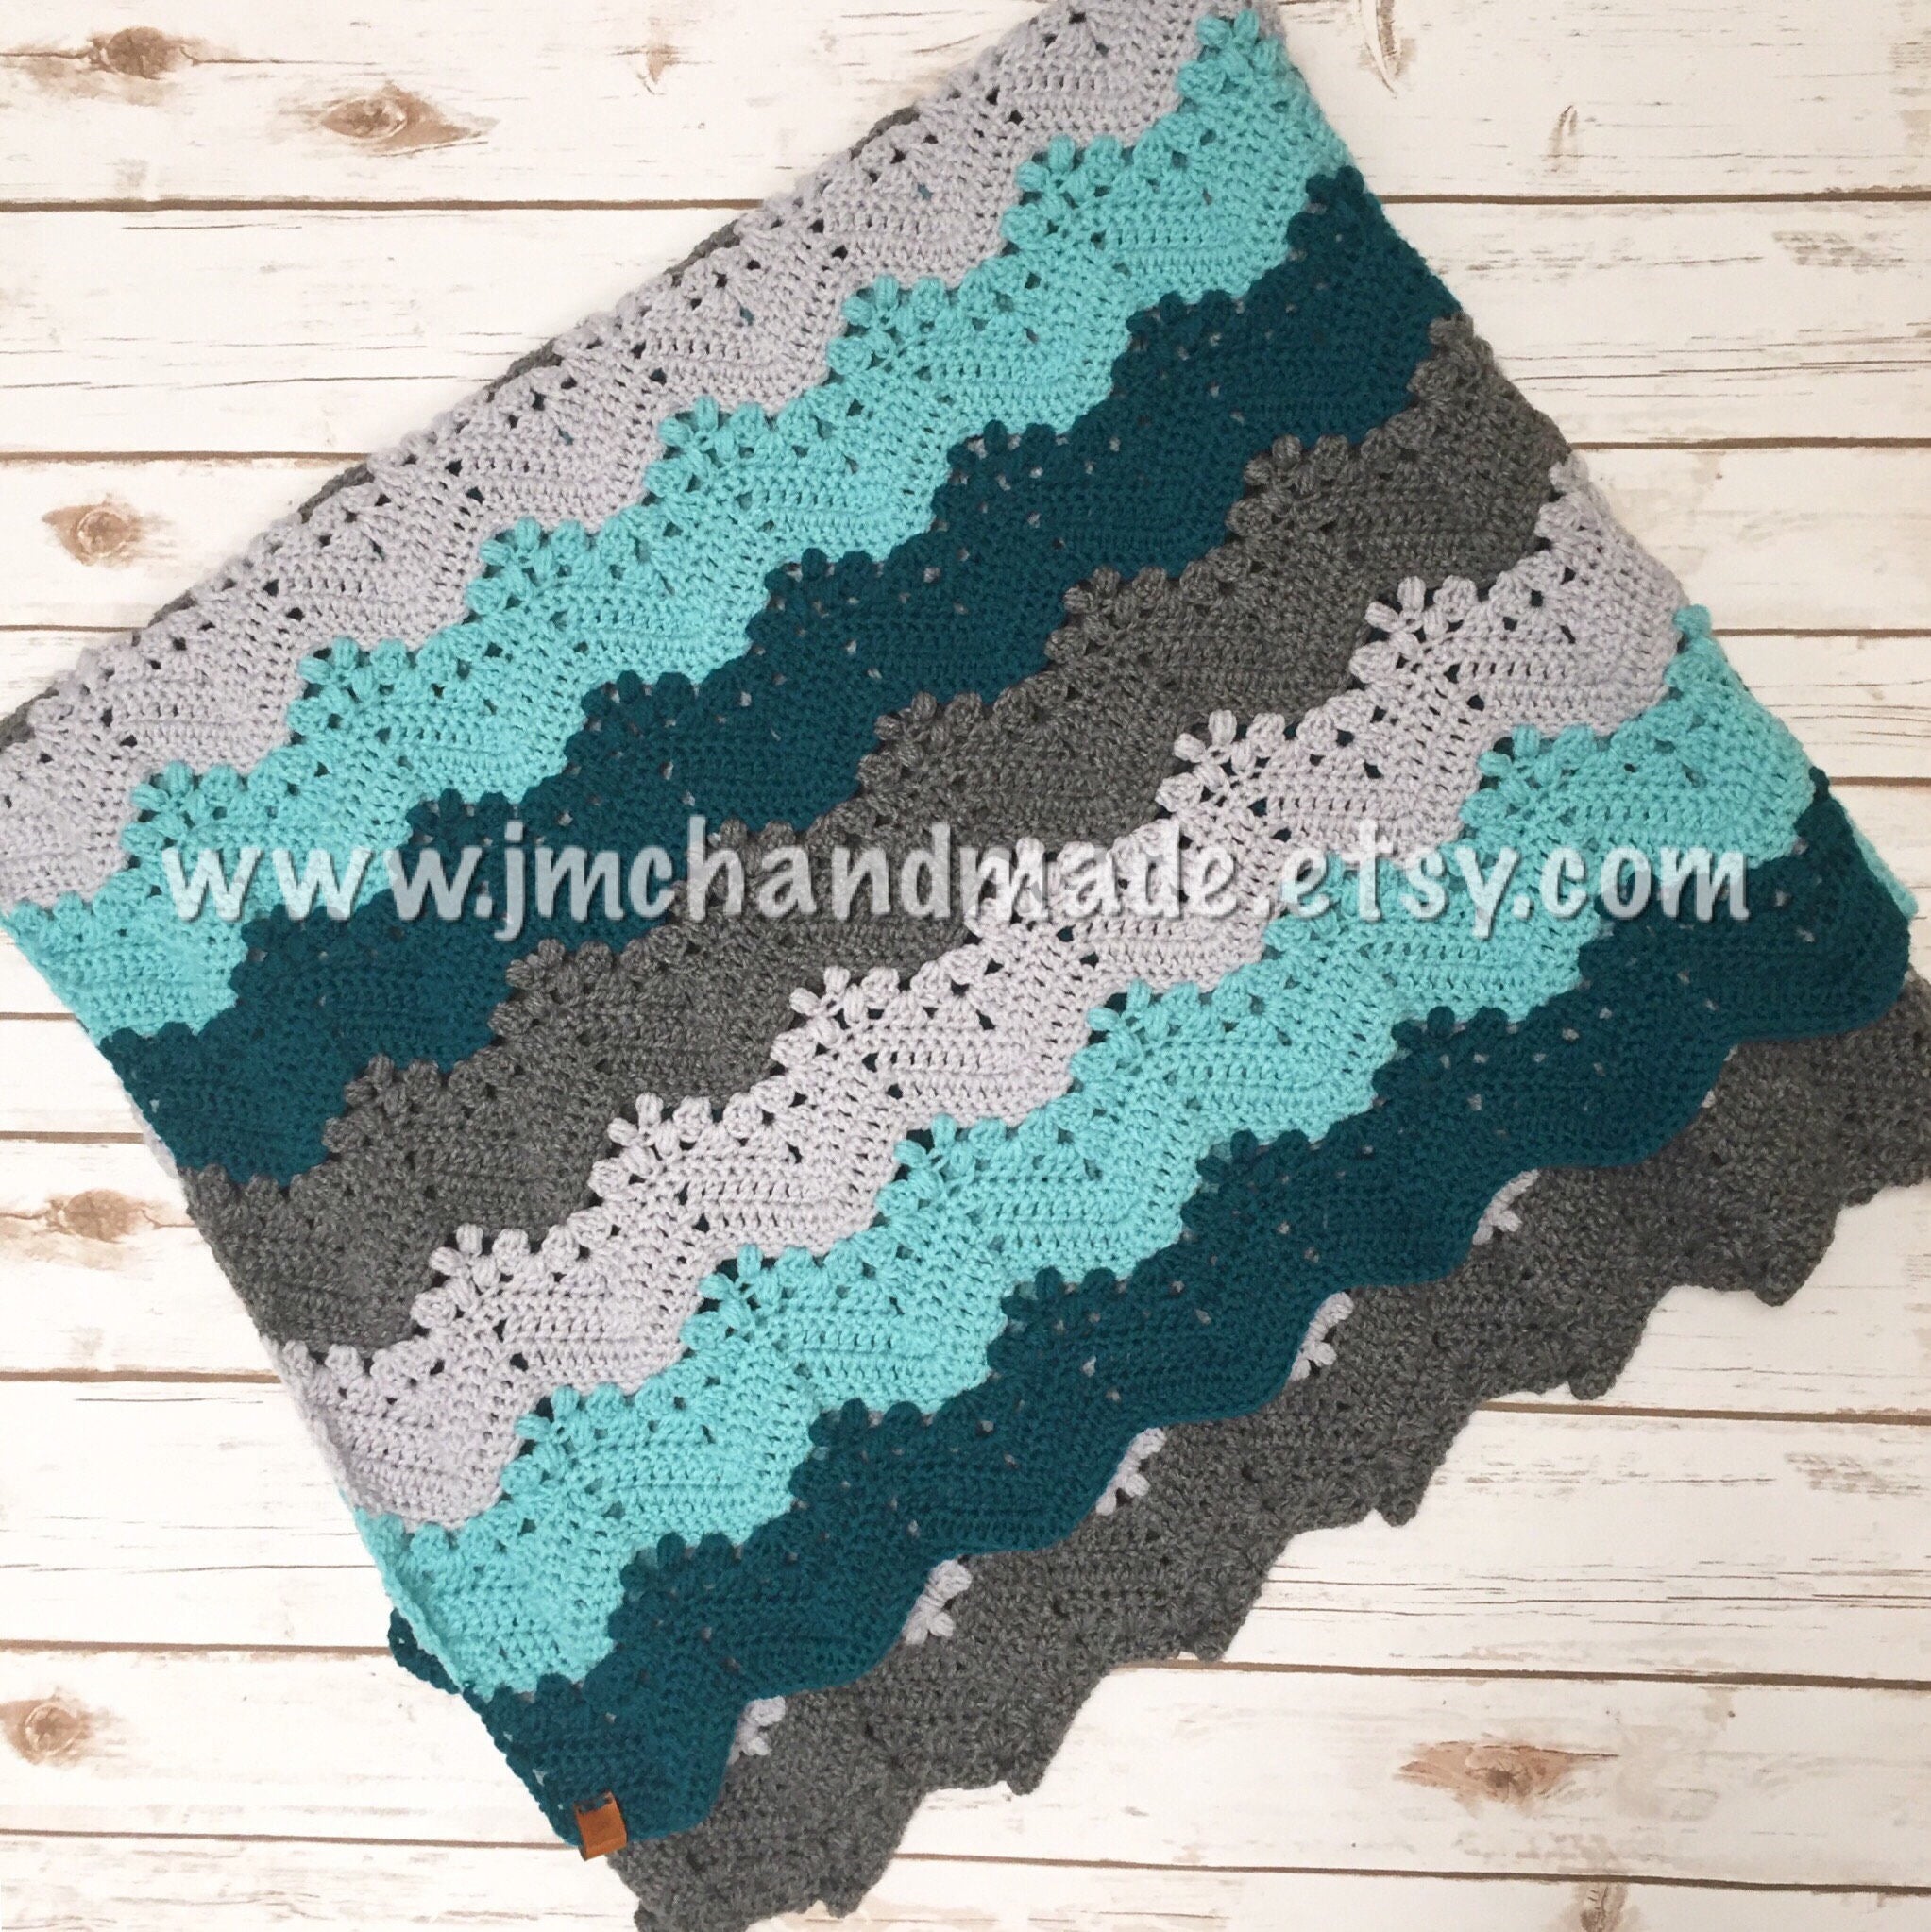 Ombre Crochet Blanket Pattern in Eight Sizes - Easy Crochet Patterns